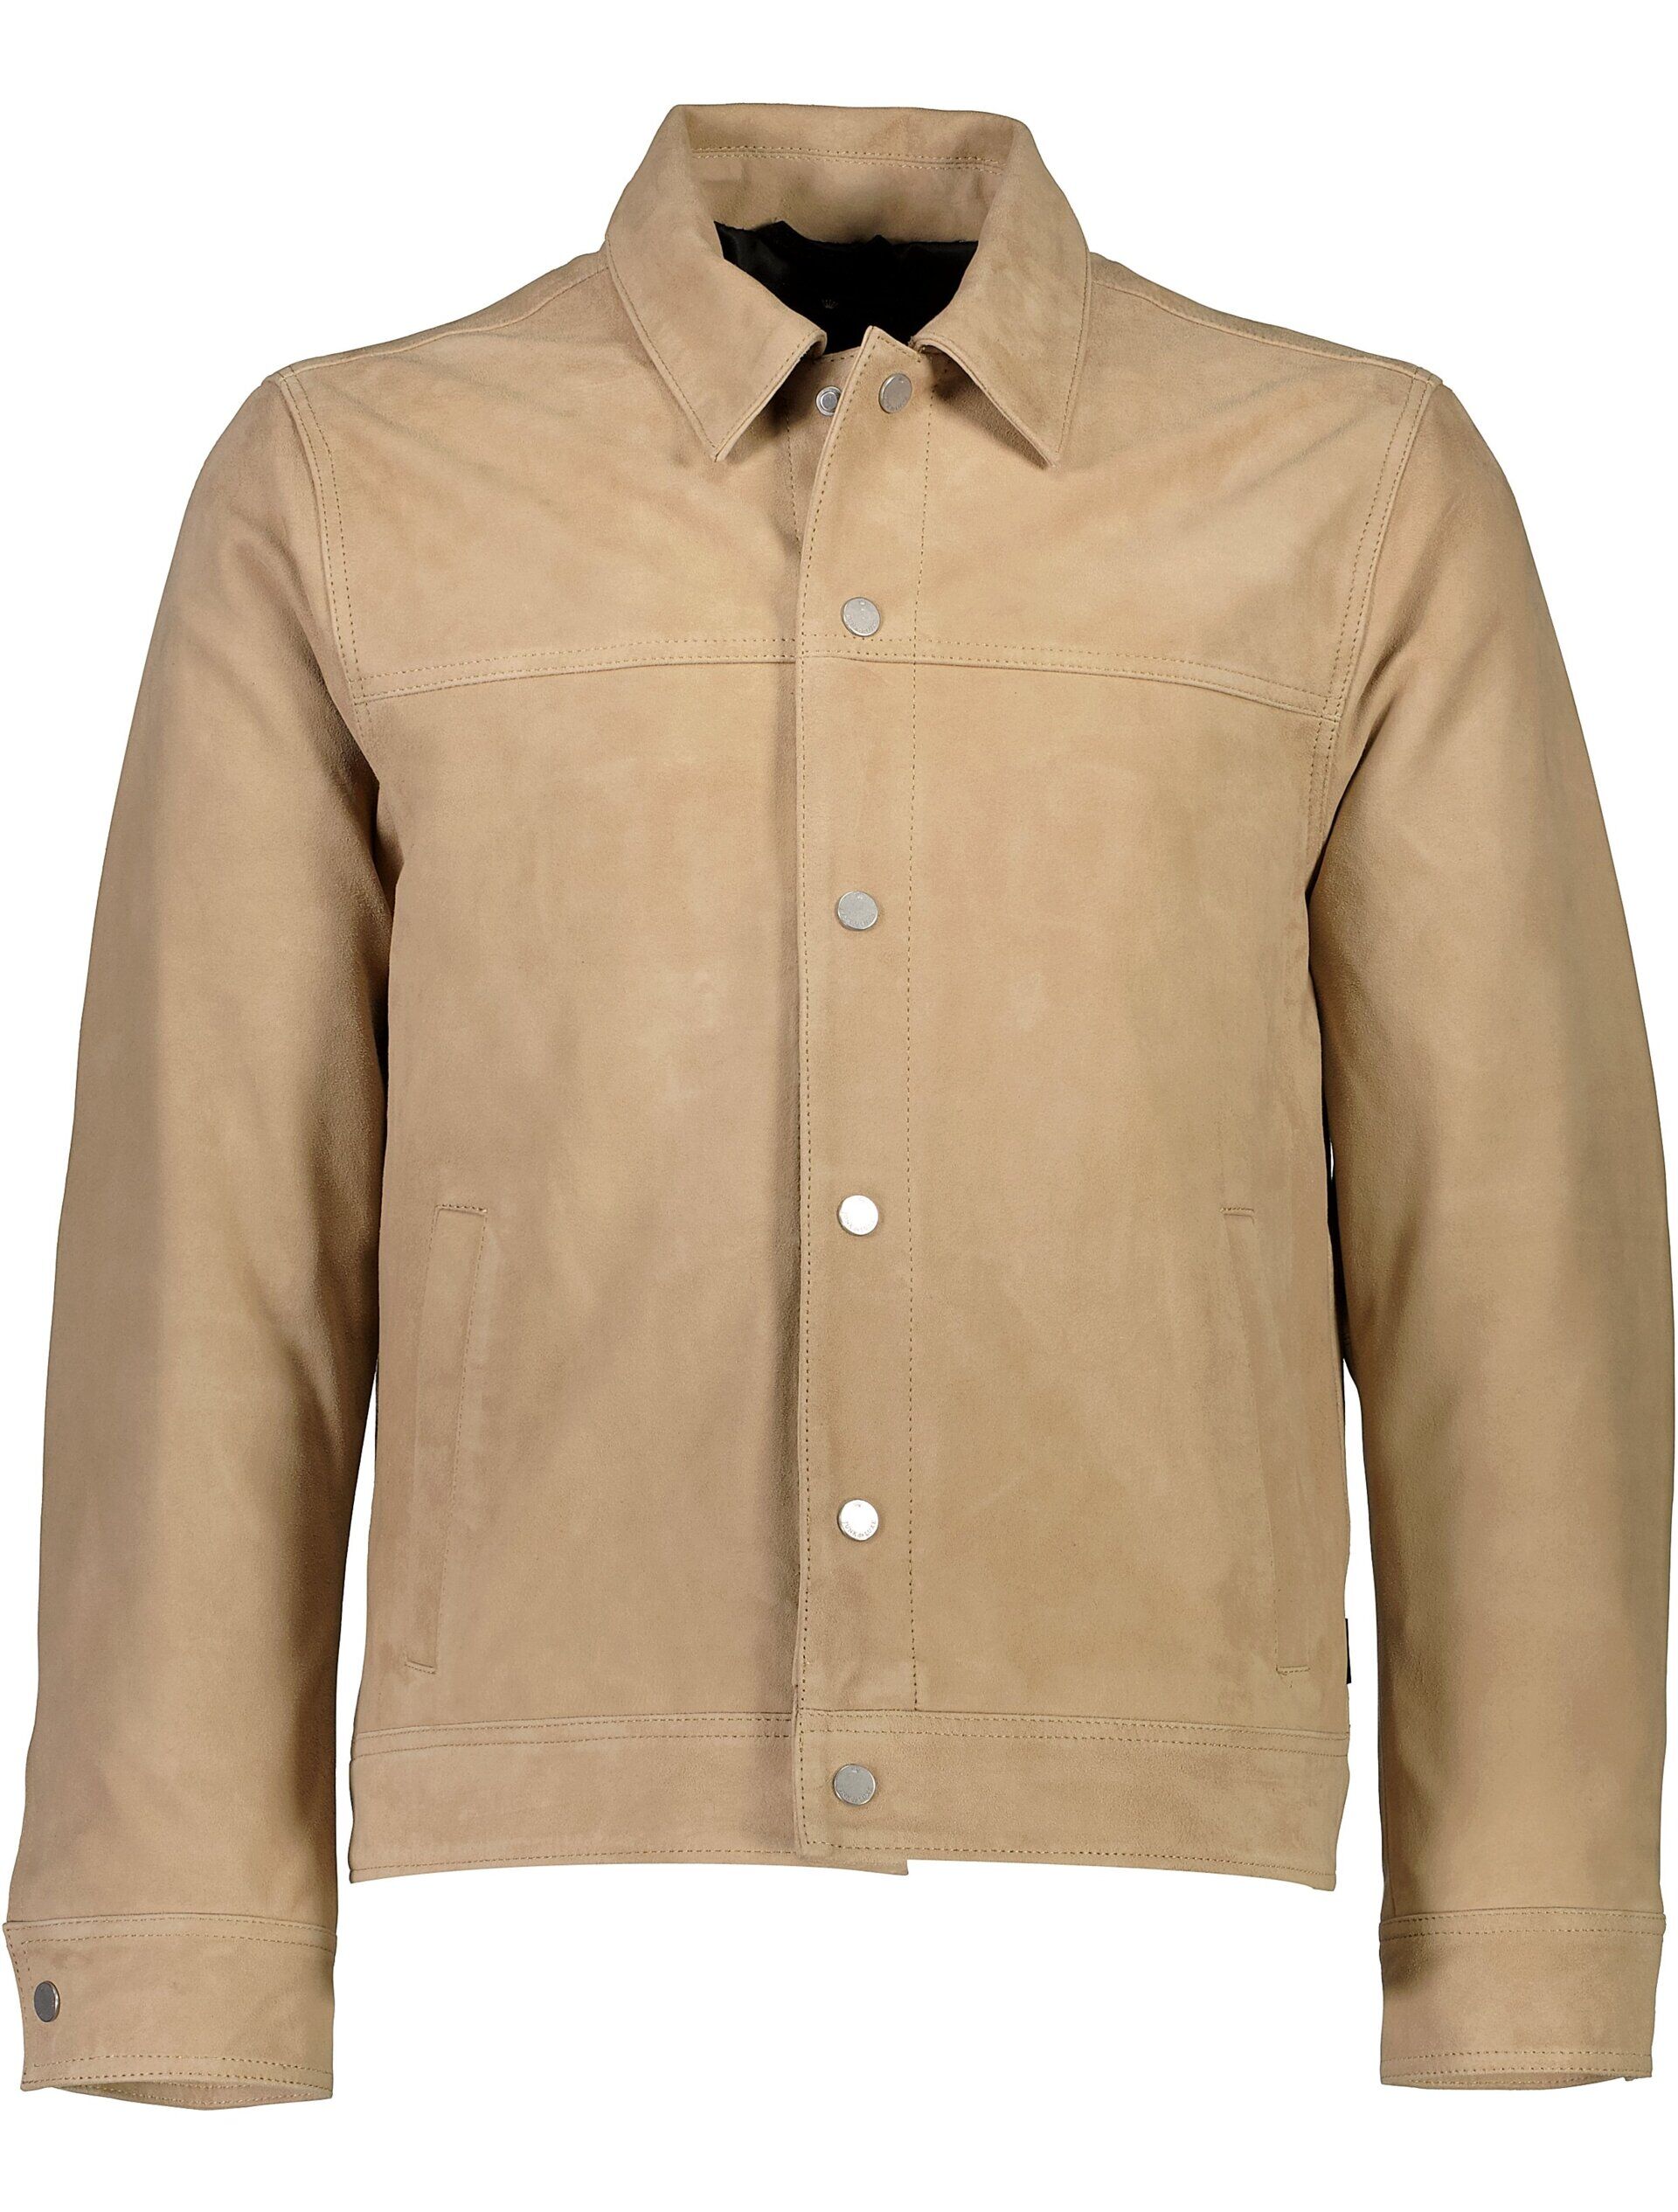 Leather jacket Leather jacket Sand 60-152010